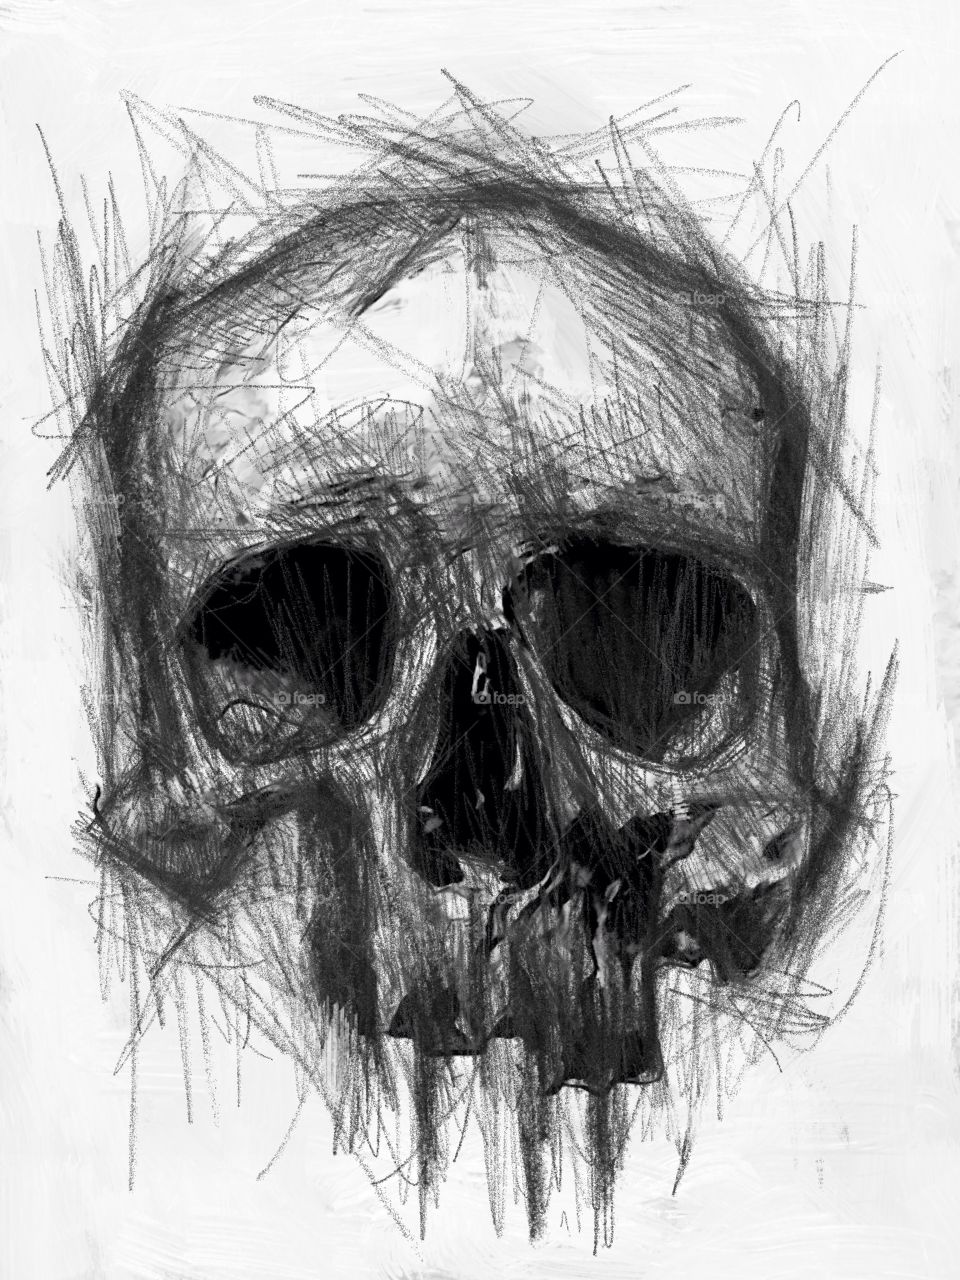 Old skull. Skull drawing on paper...;)